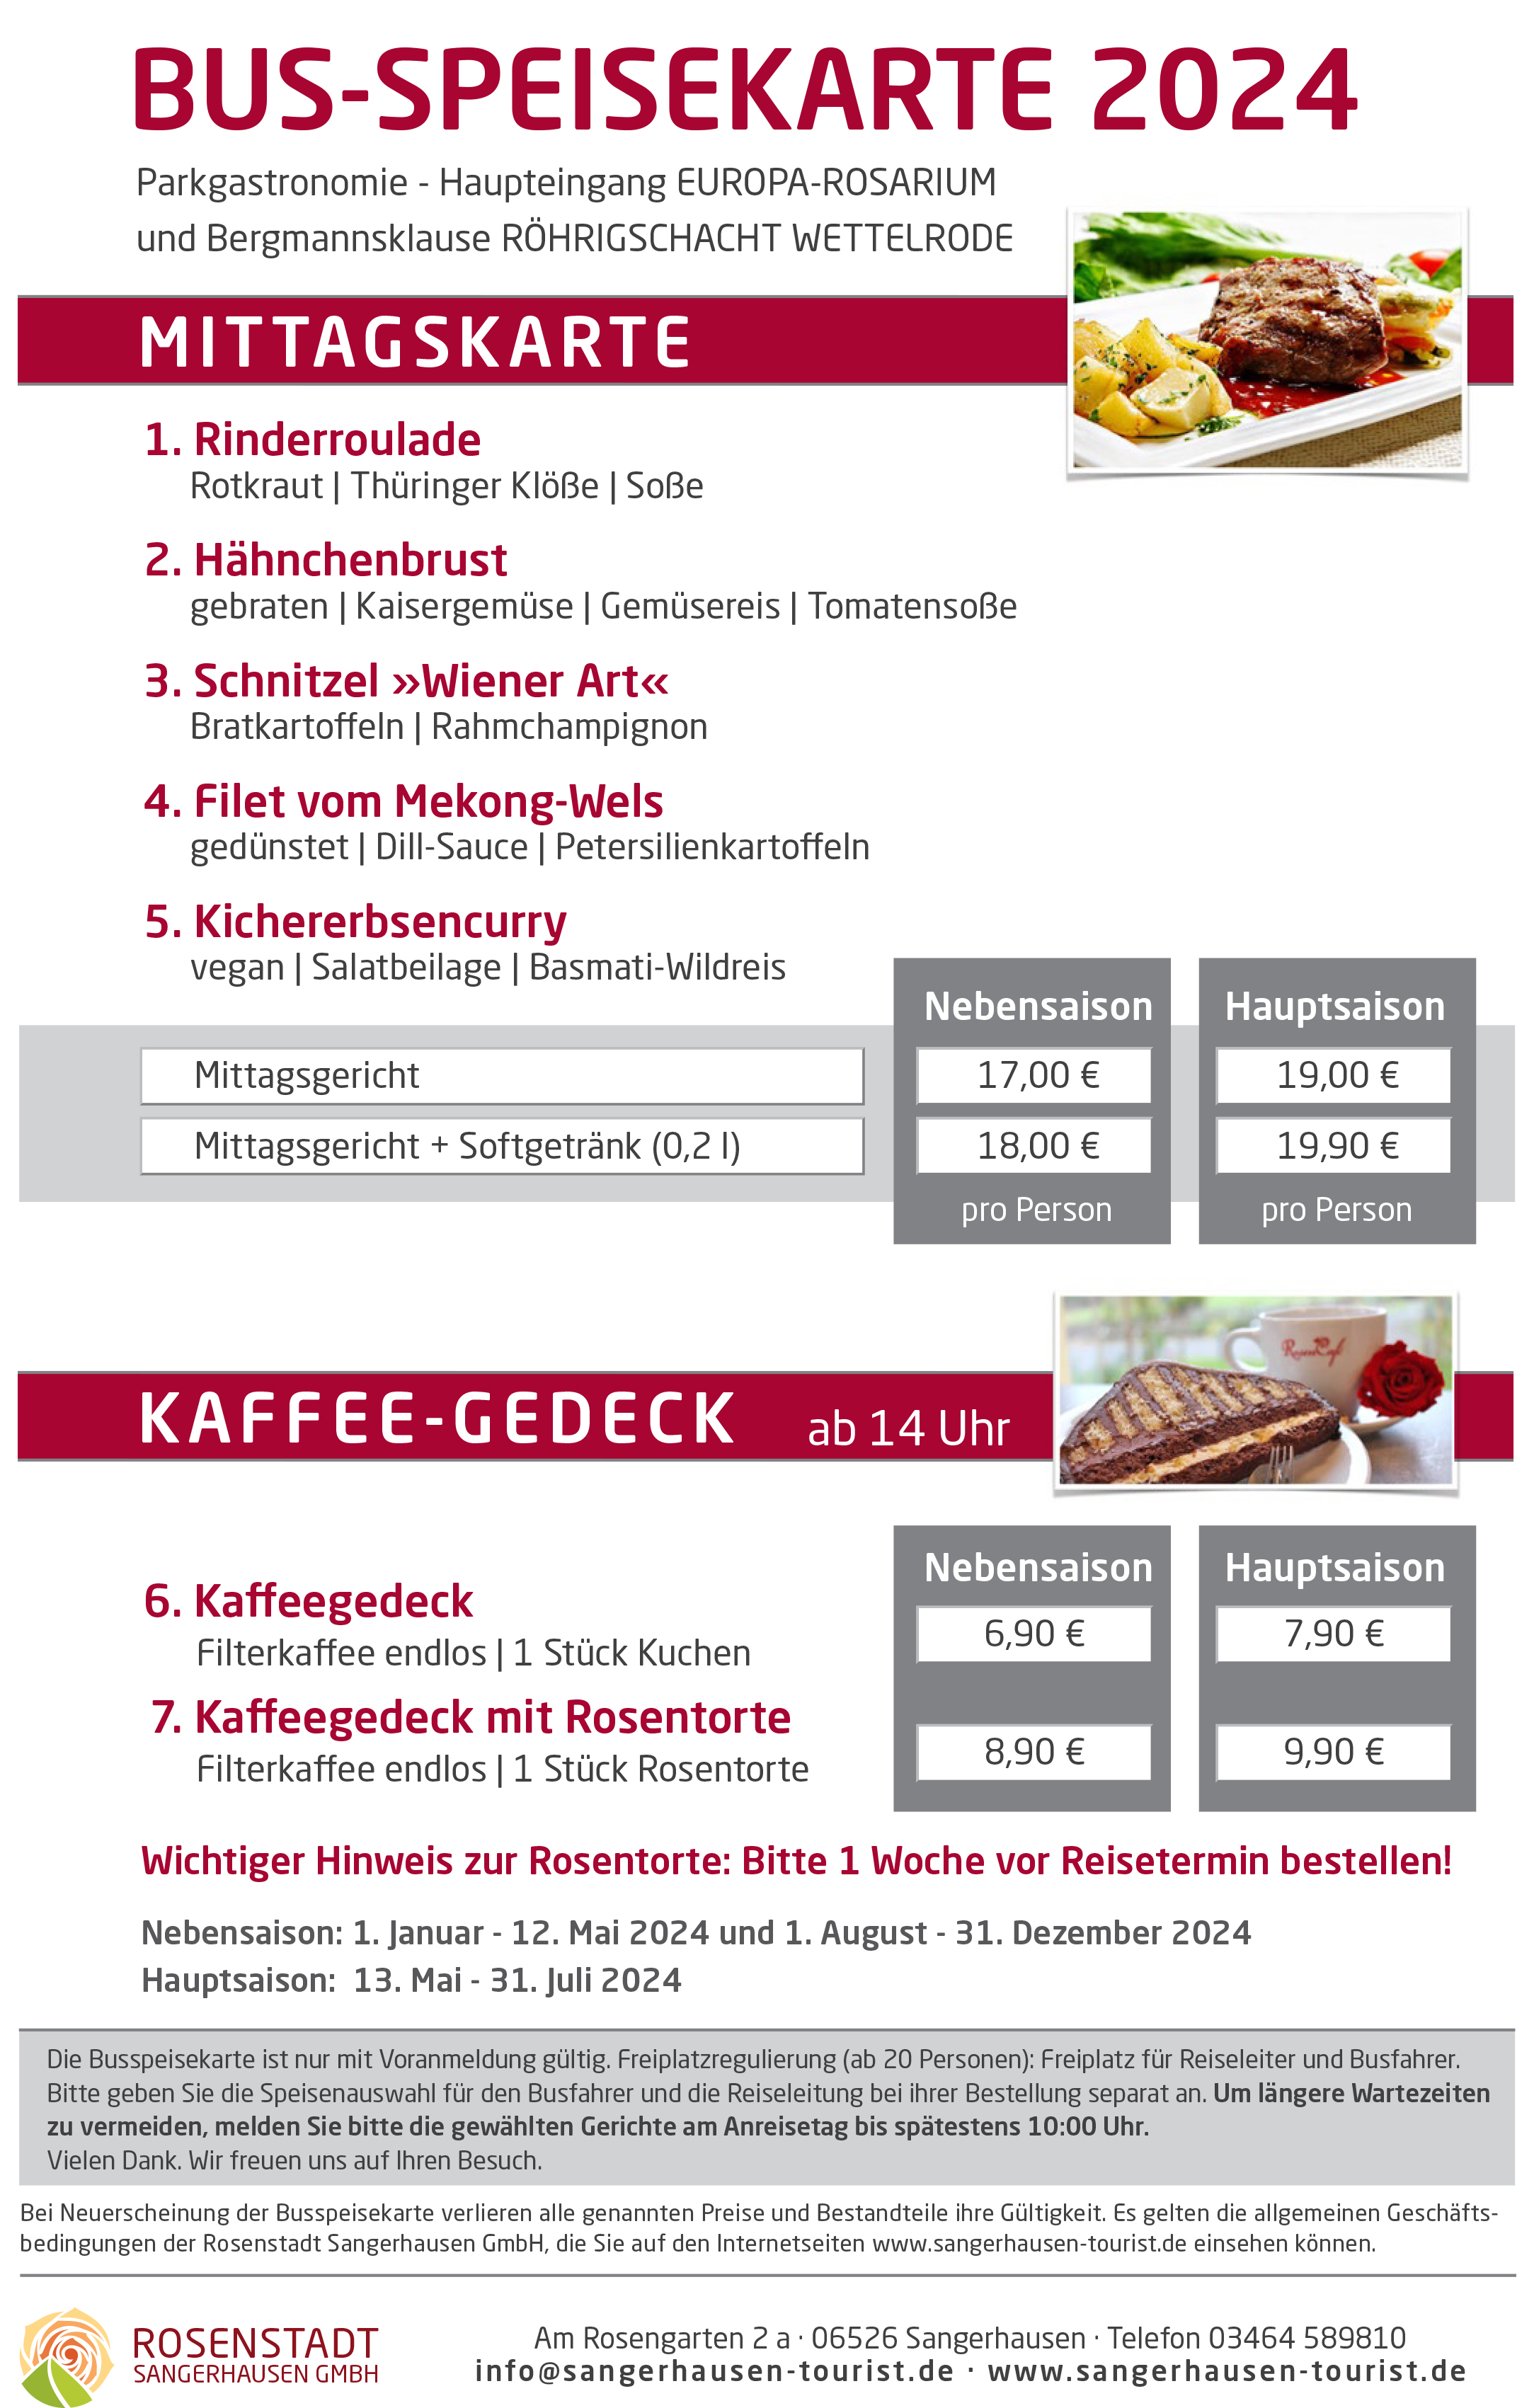 Kaffeegedeck im Europa-Rosarium Sangerhausen